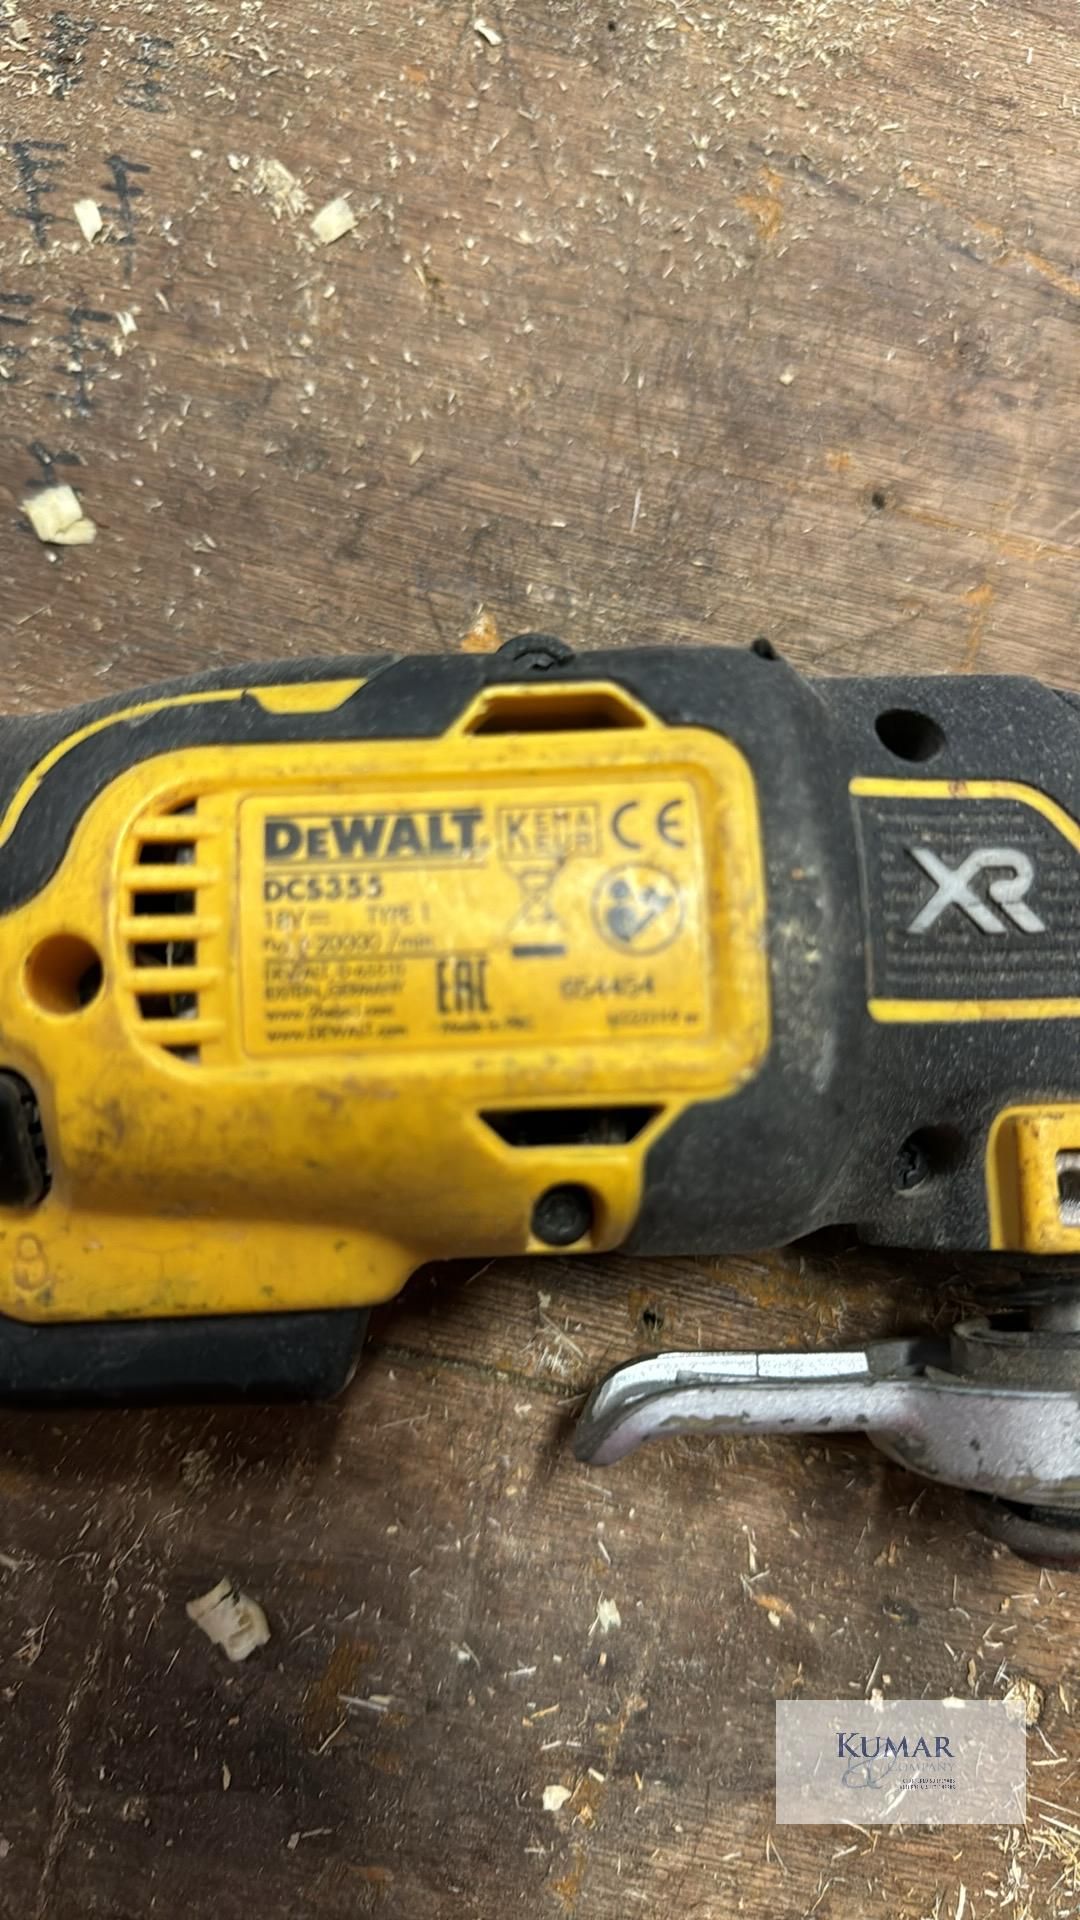 Lot of Dewalt Power Tools Comprising - DCG412 Angle Grinder, DCS355 Multi Tool with Dewalt XR 18v - Image 12 of 13